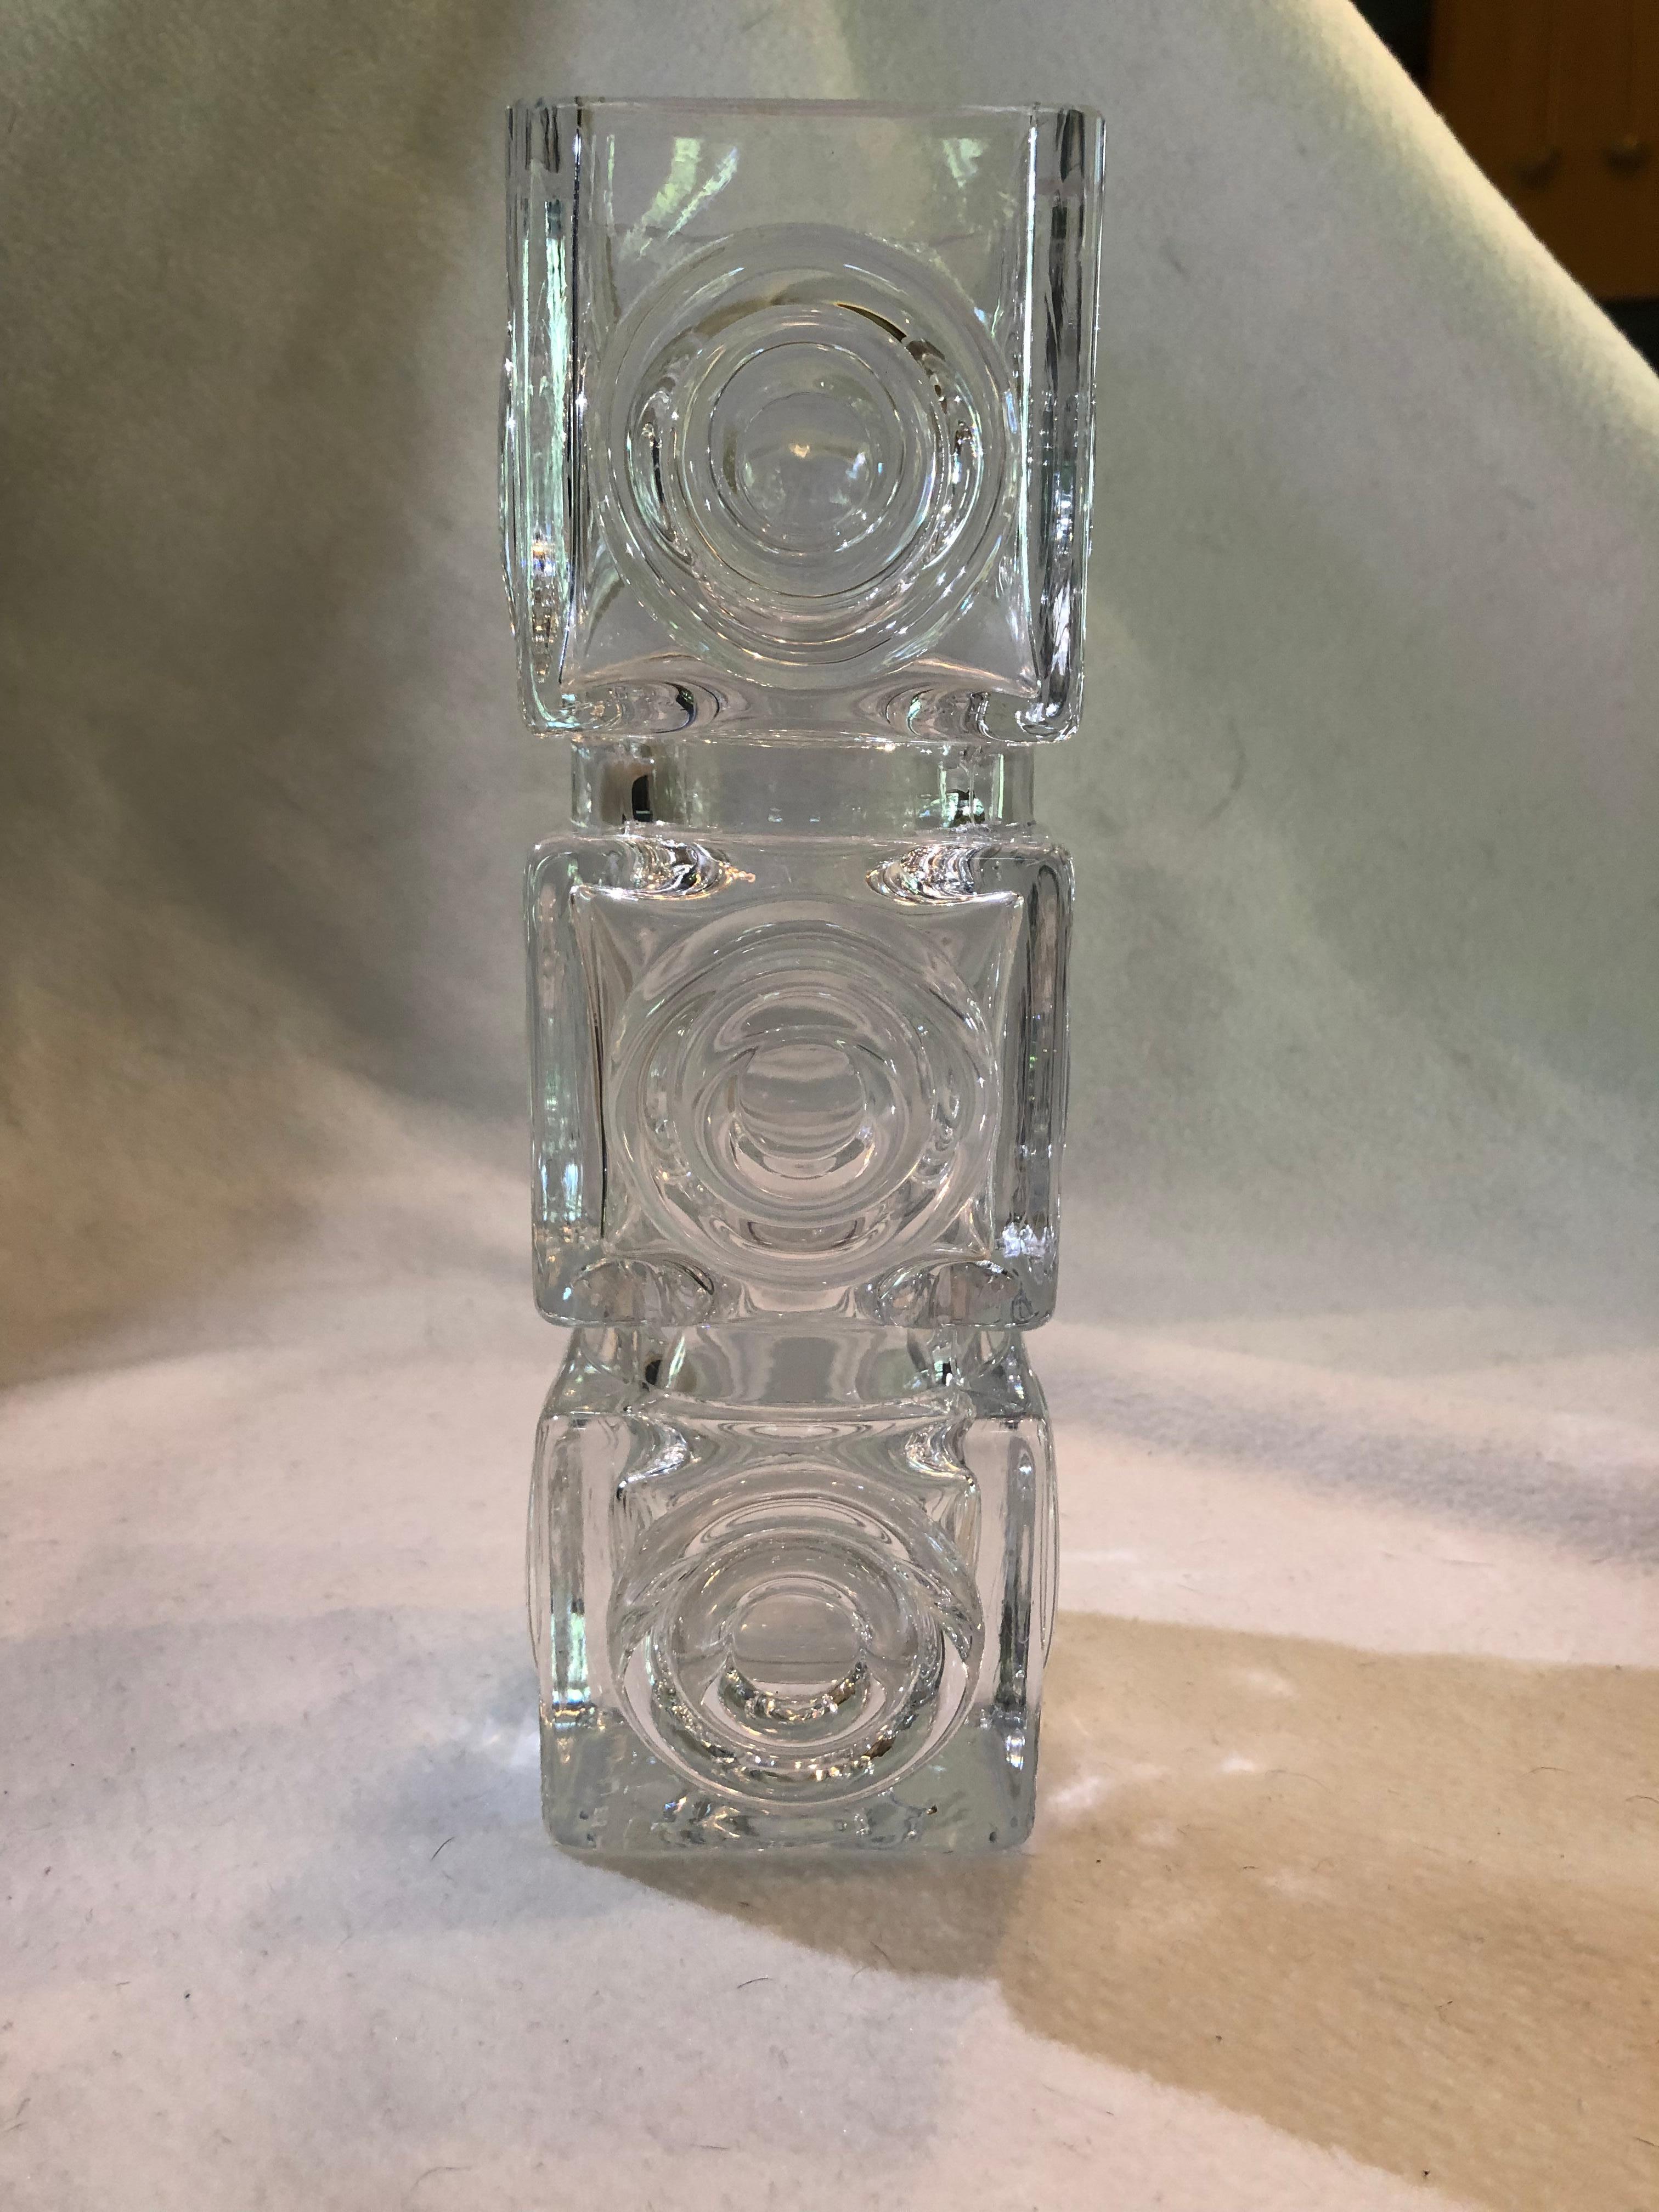 Un beau et rare vase en verre d'art suédois vintage conçu par Bengt Edenfalk pour Skruf Glasbruk. Ce grand vase en cristal de forme carrée est orné de médaillons circulaires sur les quatre côtés. La base est gravée 